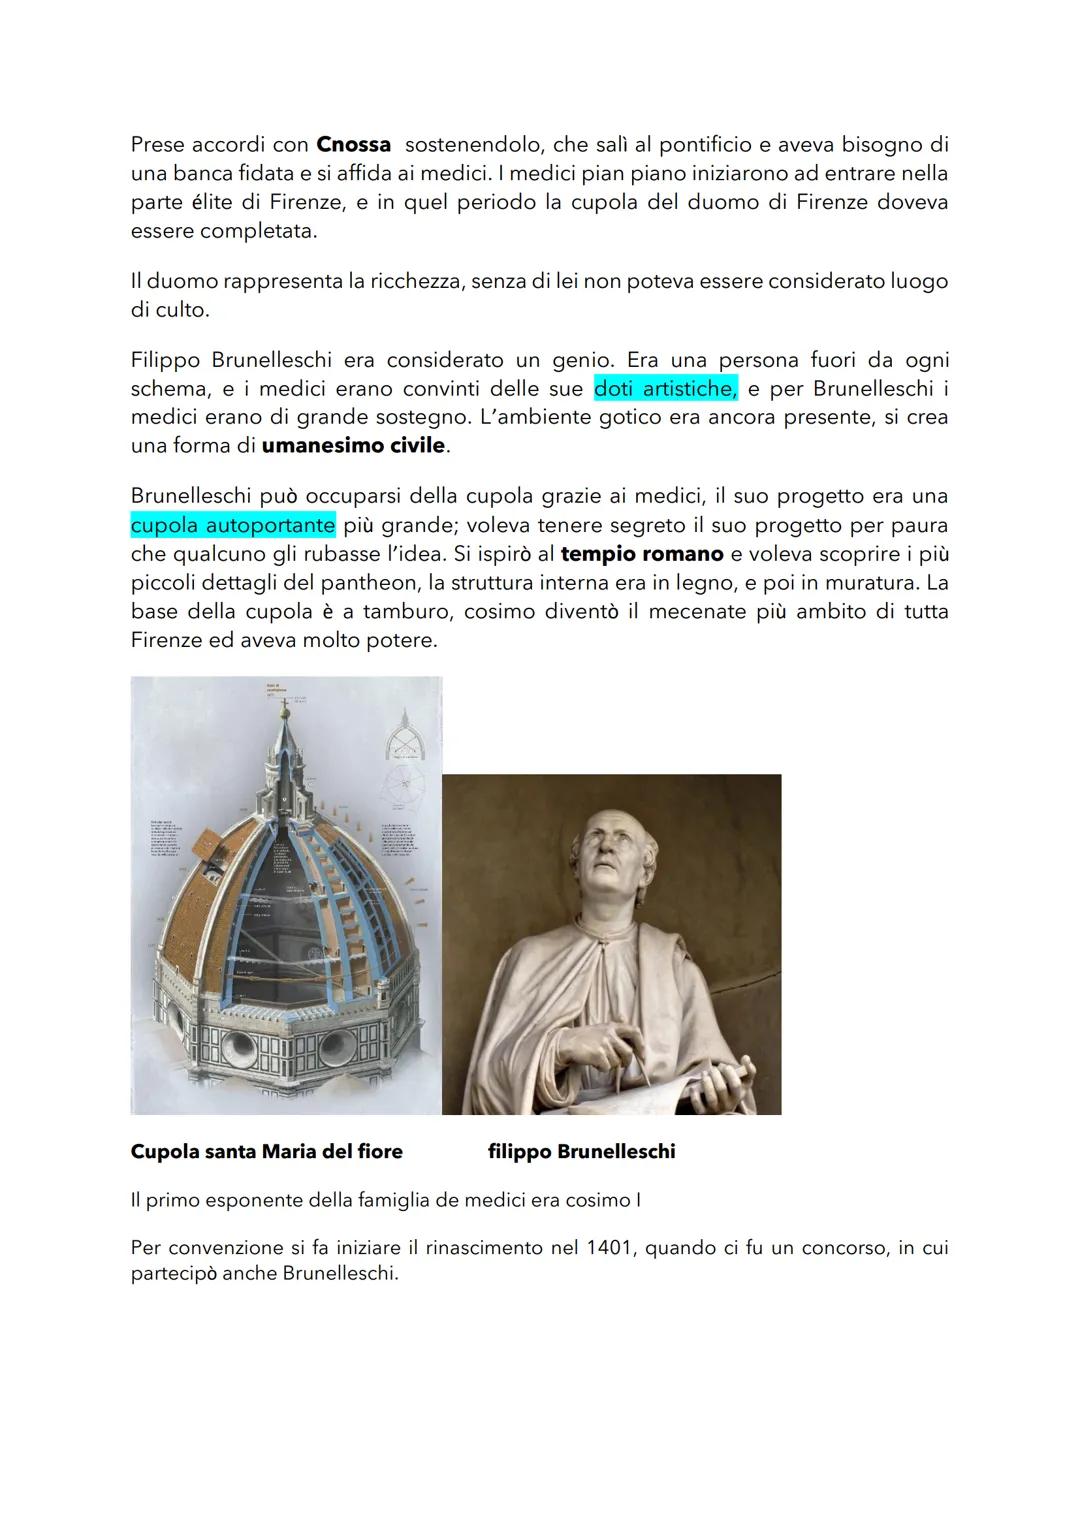 ARGOMENTI
Mettere delle fonti nell'argomento
● Perché nasce a Firenze?
Livello storico e artistico
●
Brunelleschi
La cupola di santa Maria d